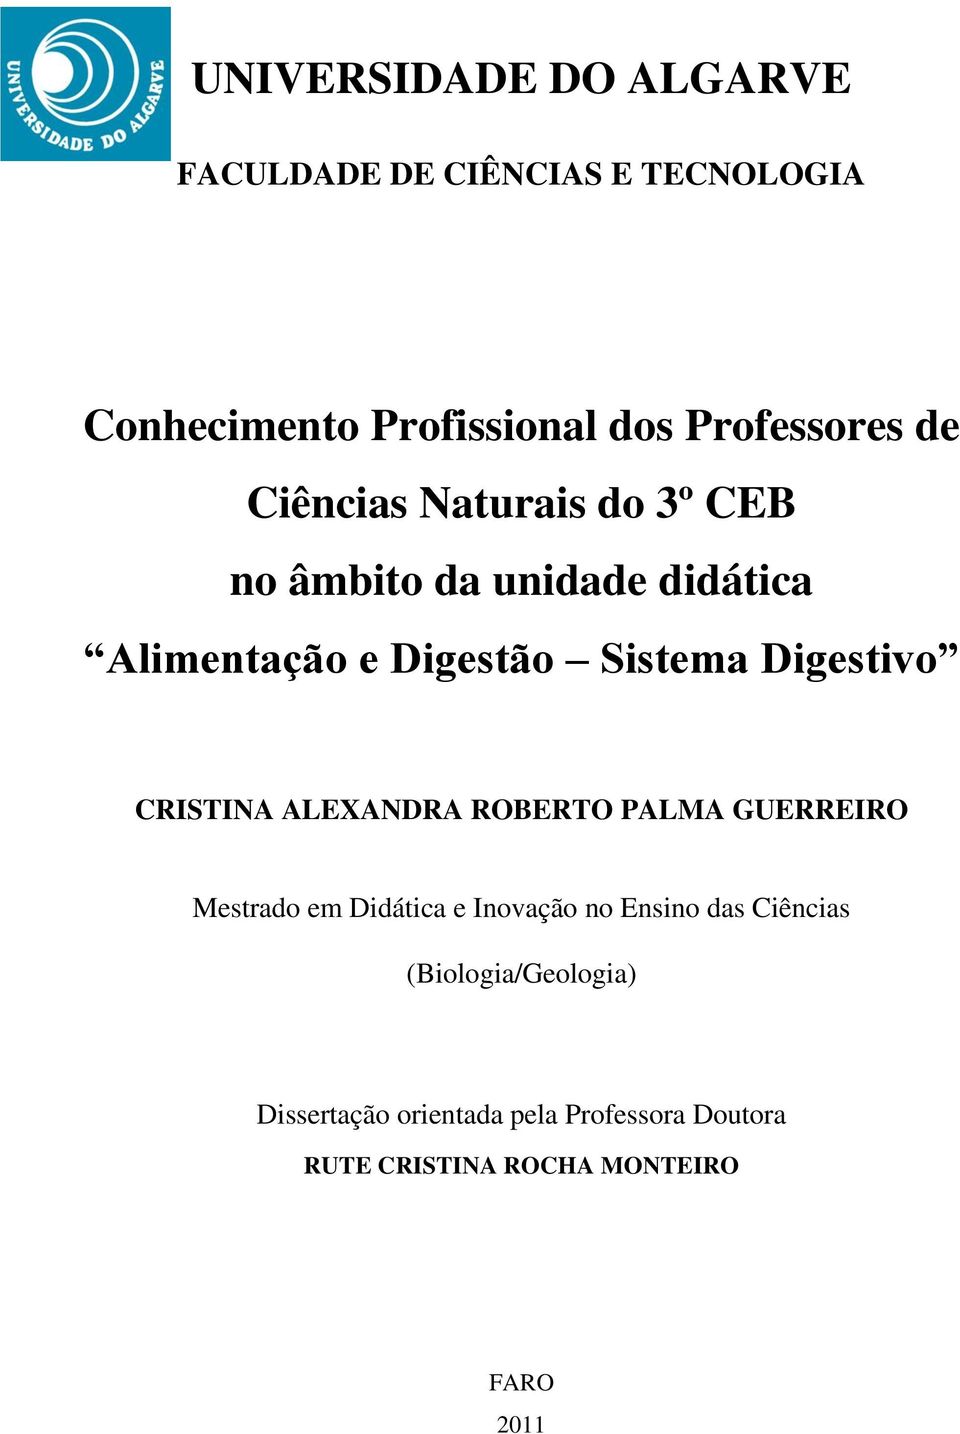 CRISTINA ALEXANDRA ROBERTO PALMA GUERREIRO Mestrado em Didática e Inovação no Ensino das Ciências